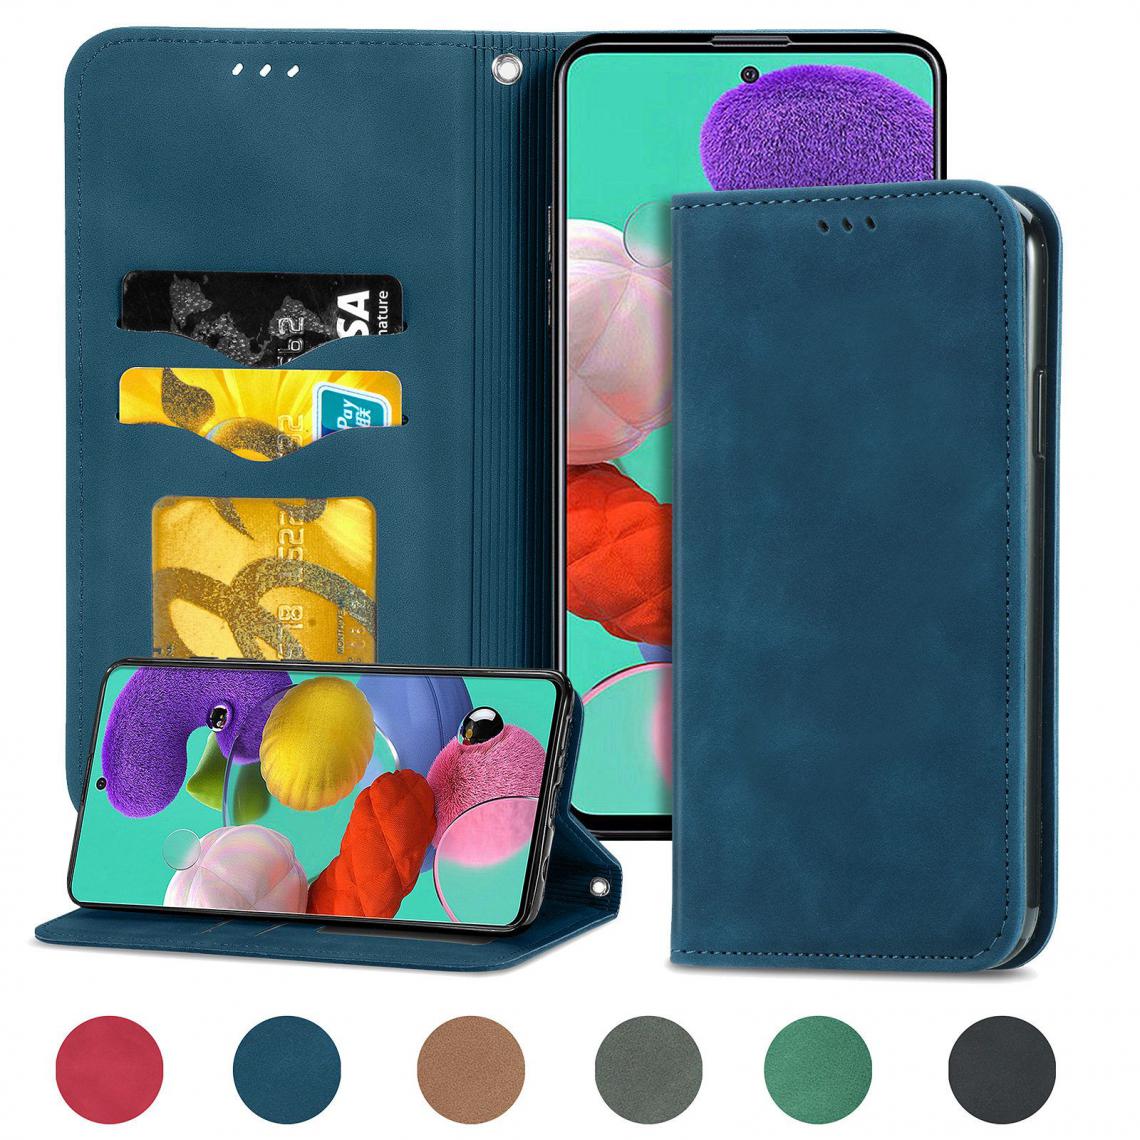 OtterBox - Samsung Galaxy A10 Housse Etui Coque de protection type portefeuille (support carte de credit) [Bleu] - Coque, étui smartphone